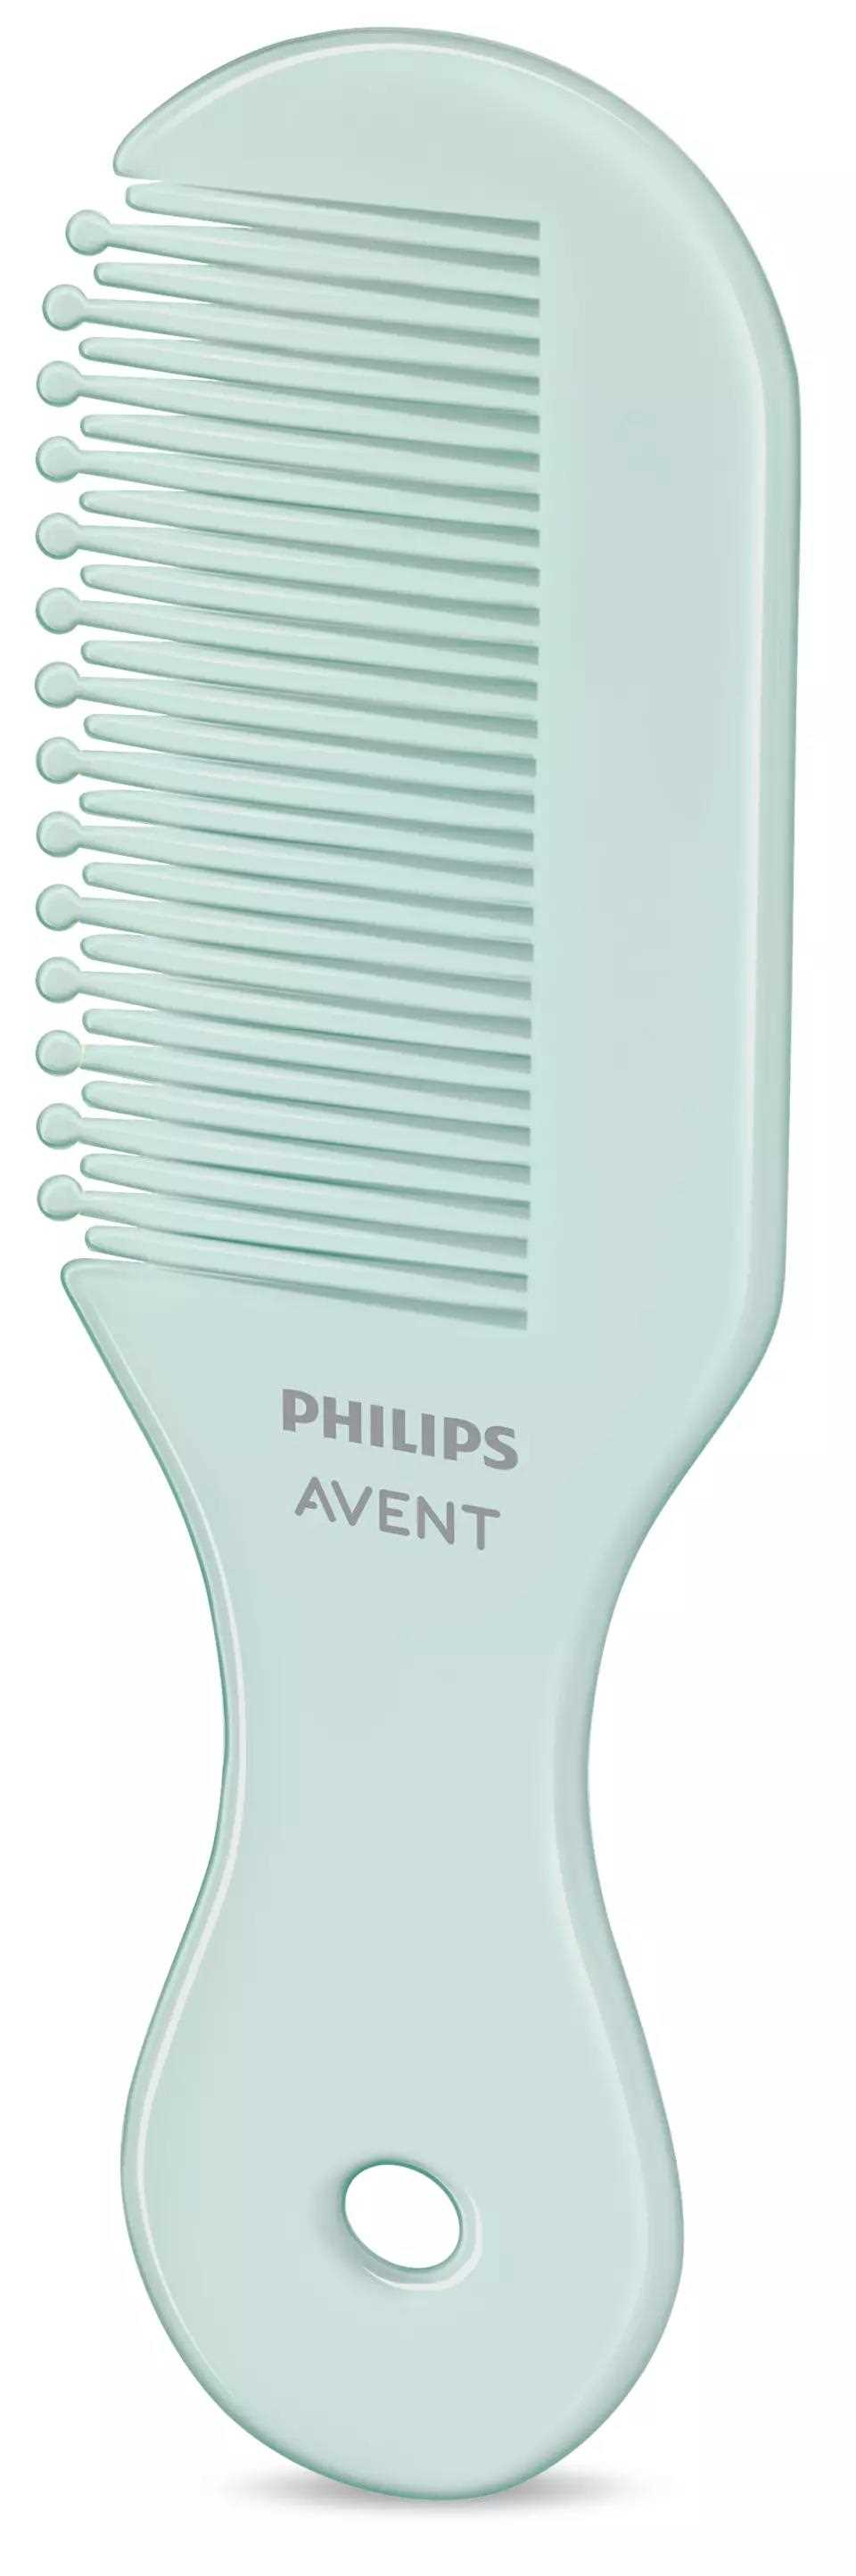 Philips Avent SCH401/ 00 sada pro péči o dítě8 